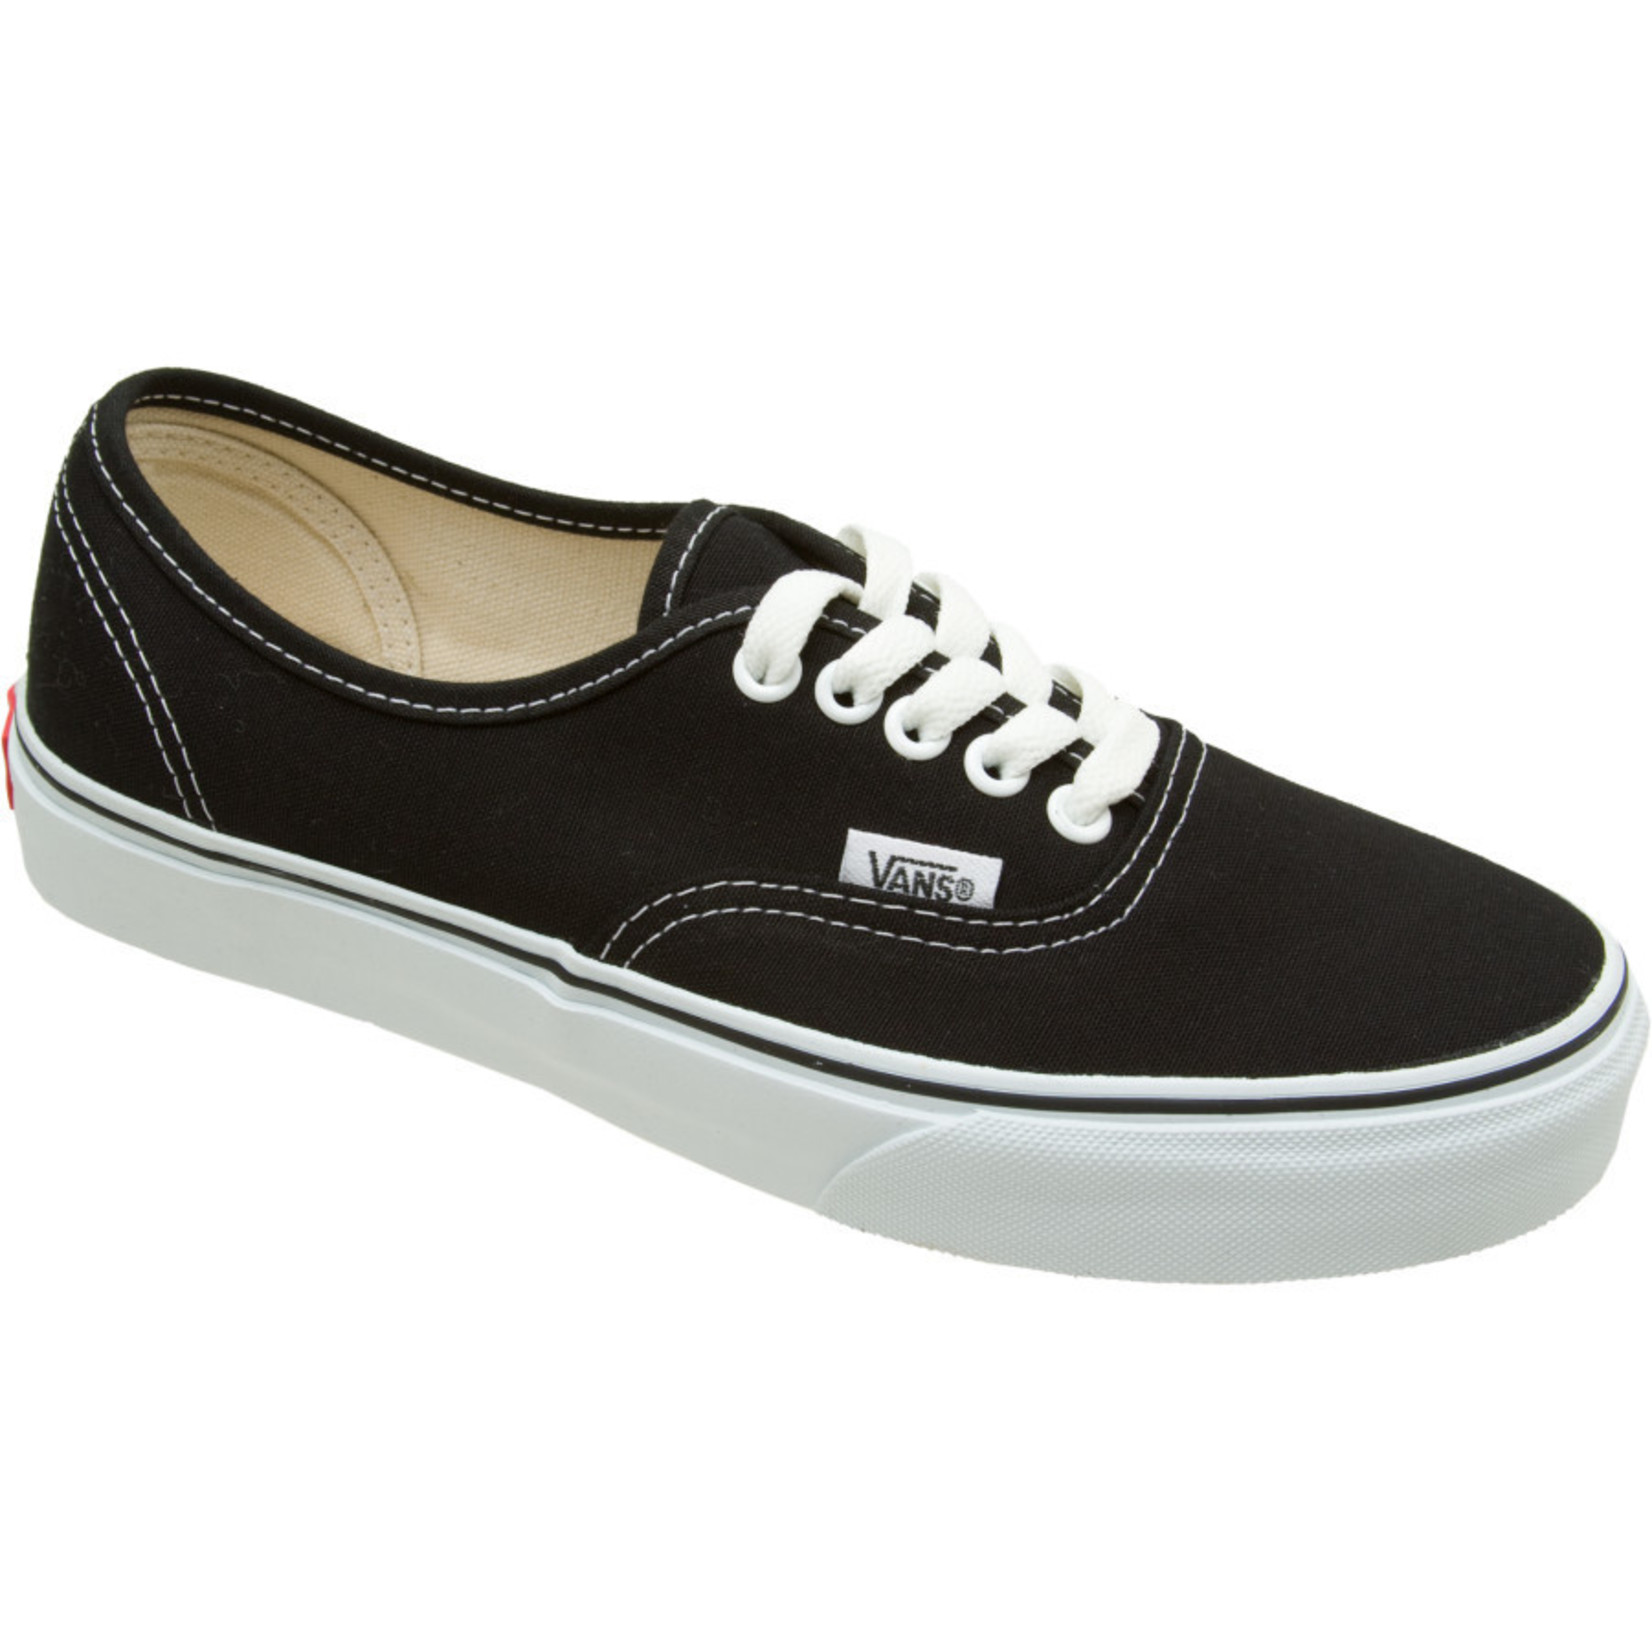 Vans Vans Authentic Skate Shoes - Black/White -